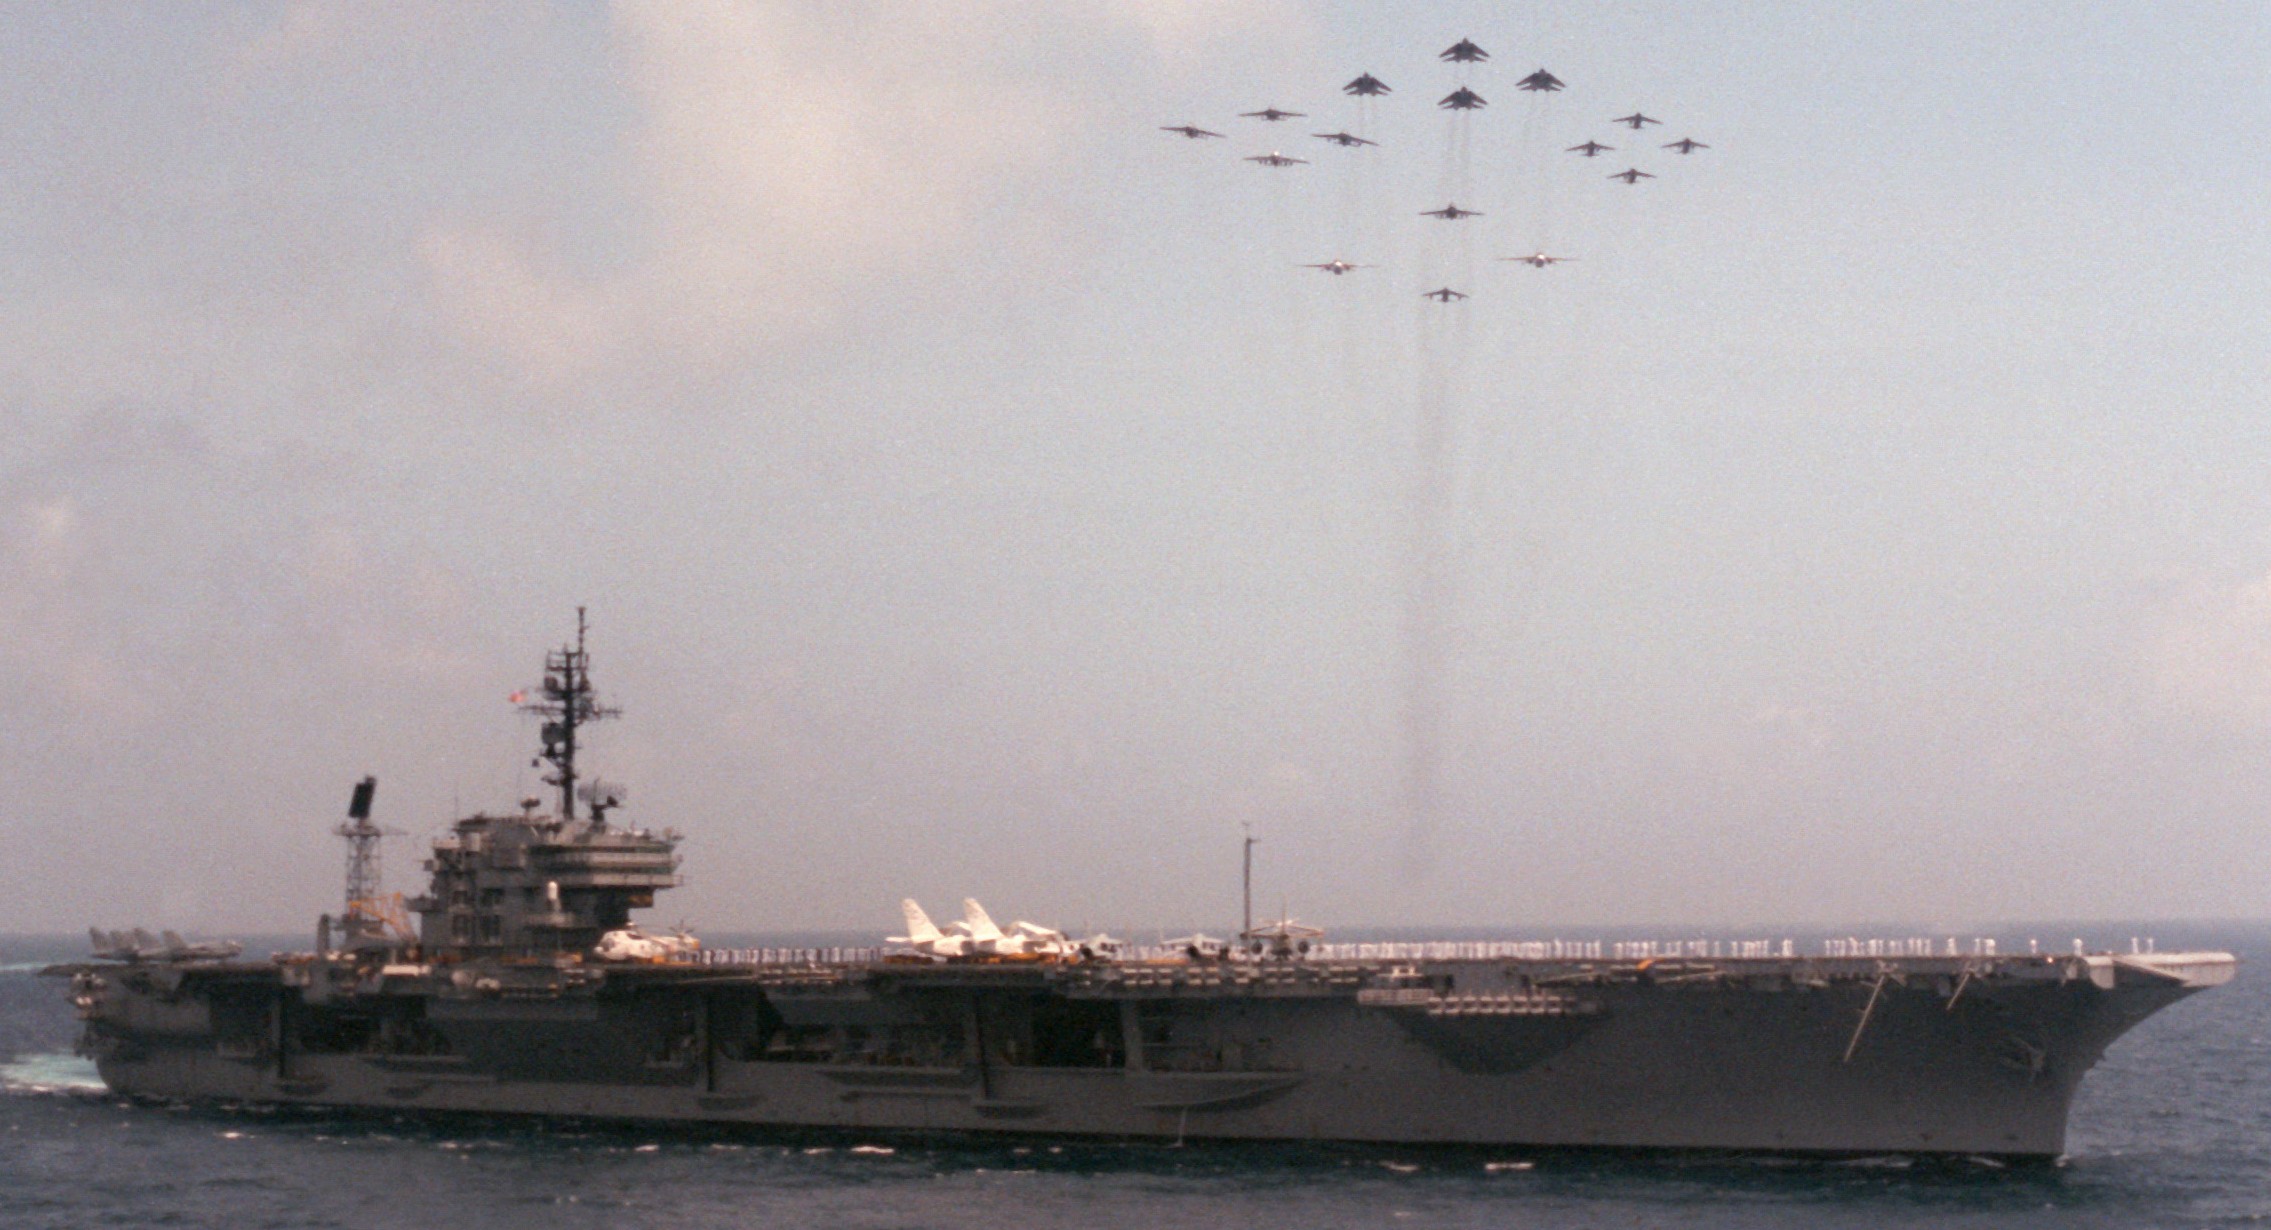 cv-63 uss kitty hawk aircraft carrier air wing cvw-9 us navy 443 world cruise 1987